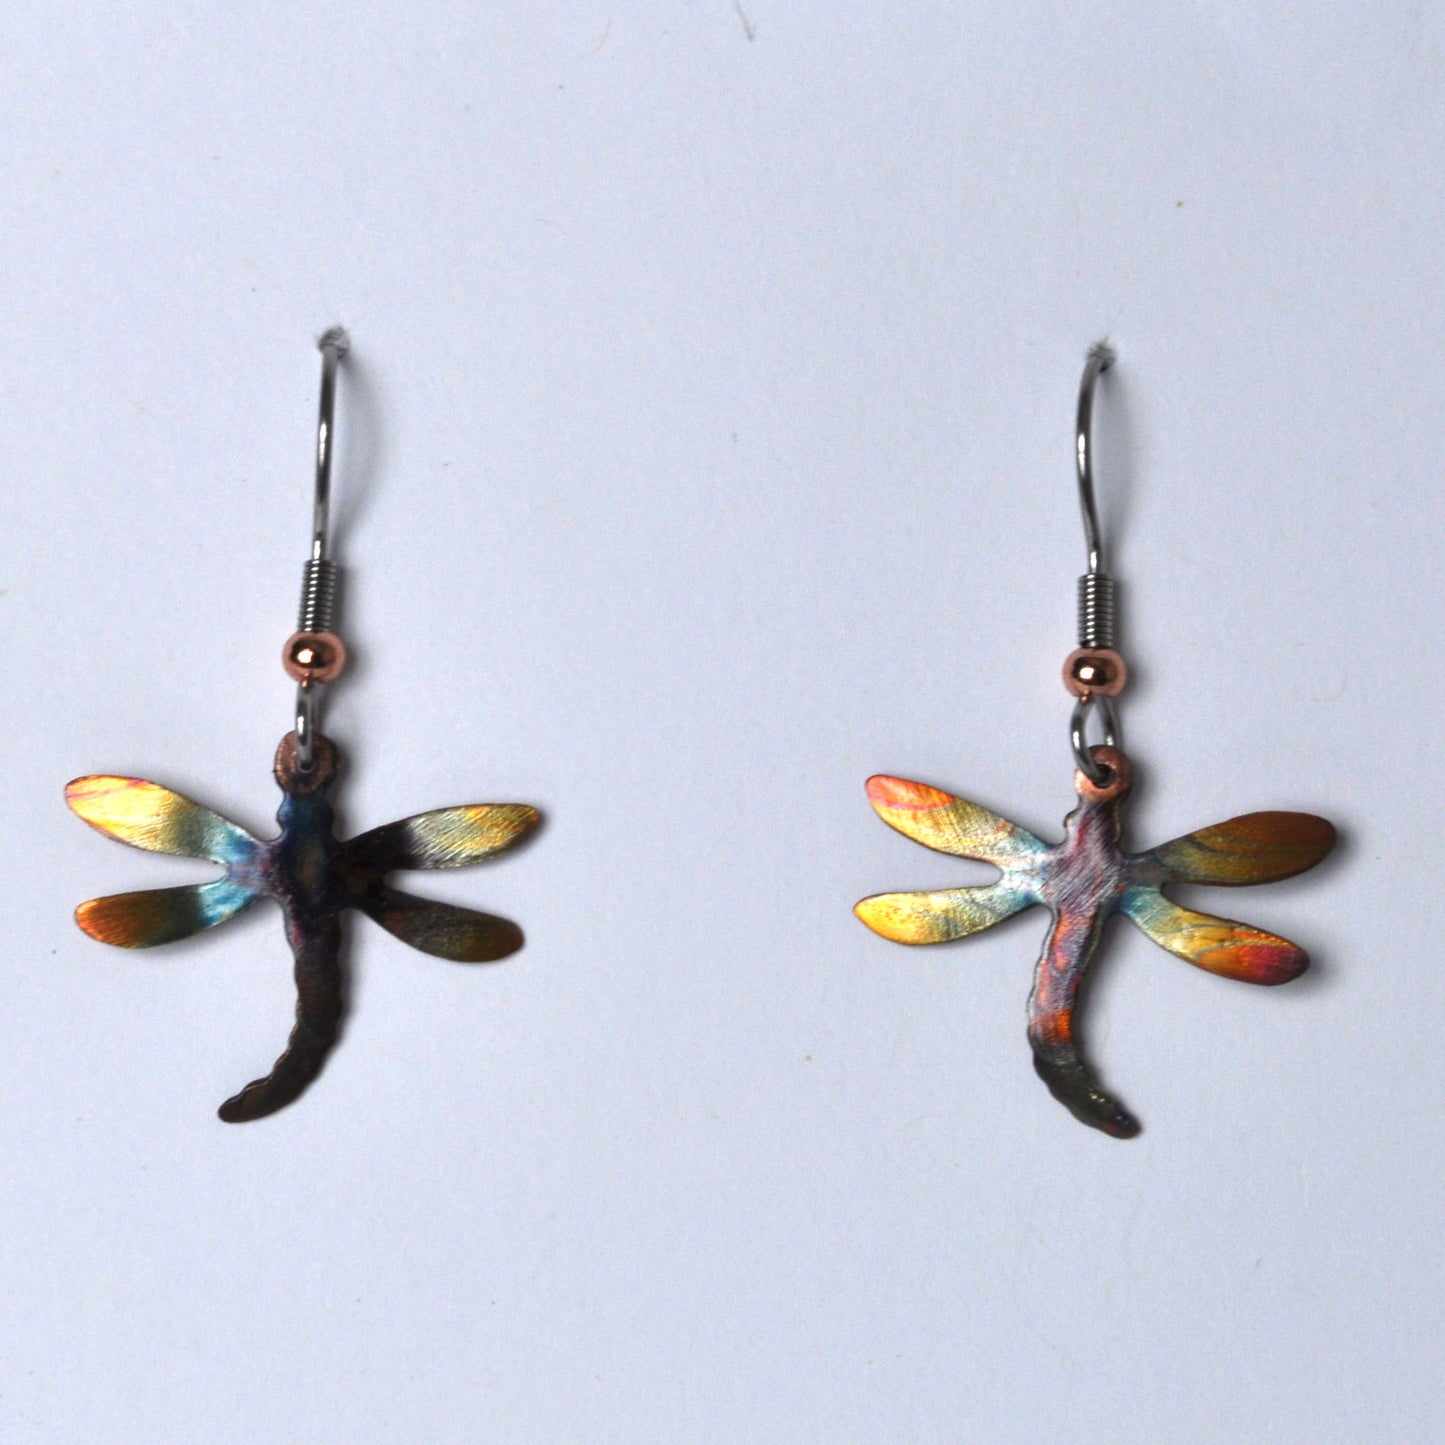 Gypsy Phoenix - Copper Dragonfly Jewelry